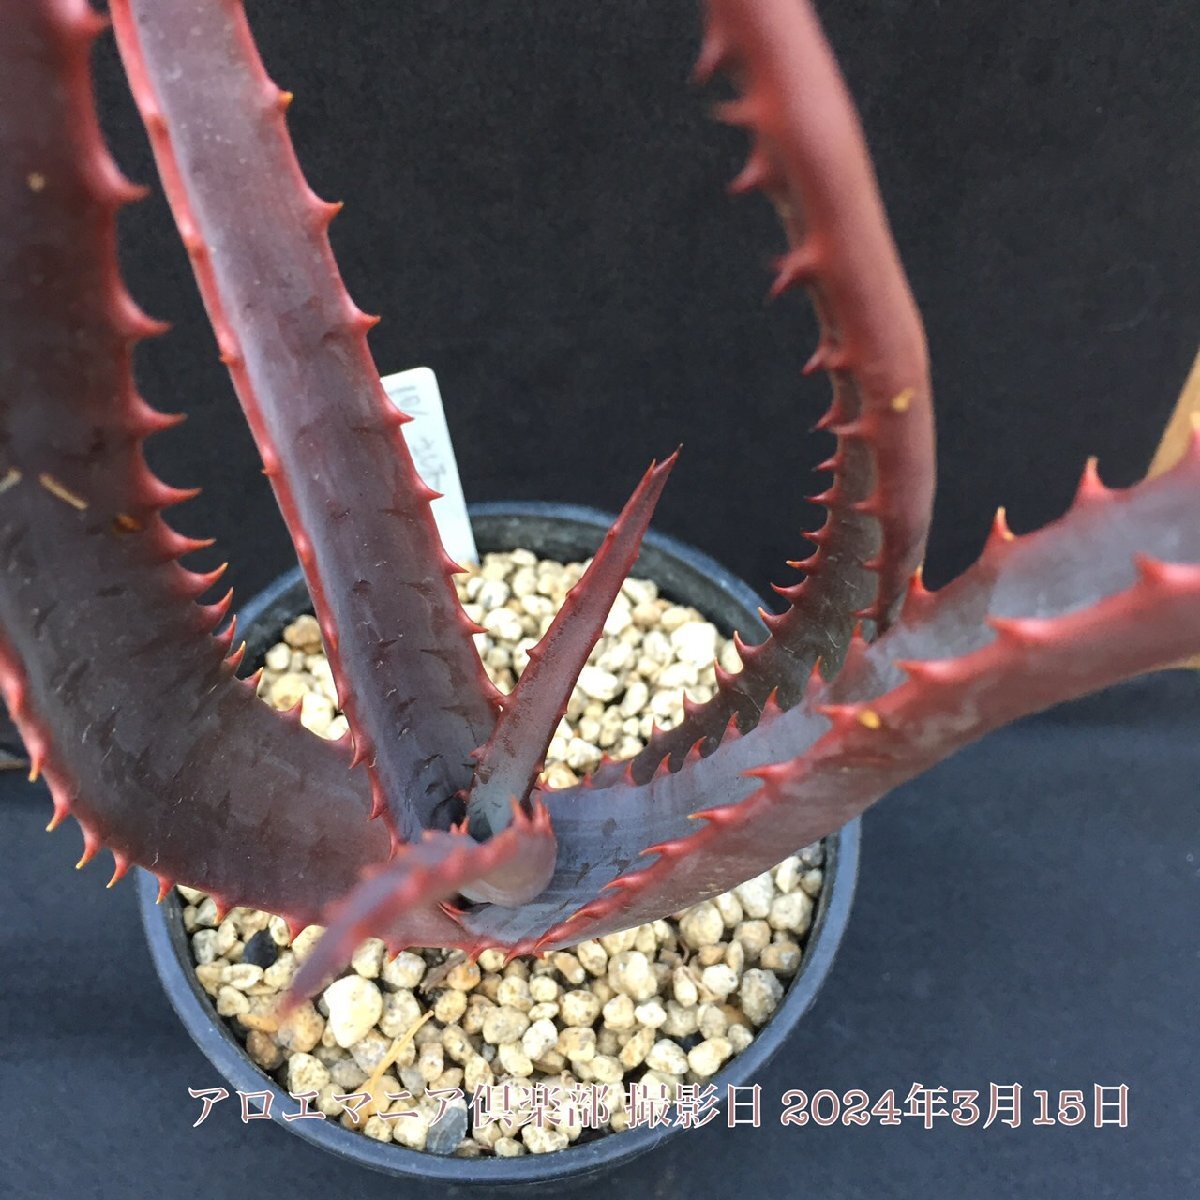 聖者錦（Aloe rupestris ルペストリス)　真っ赤な紅葉アロエ 超大型本物 温室物 自社AMK 競り_画像7